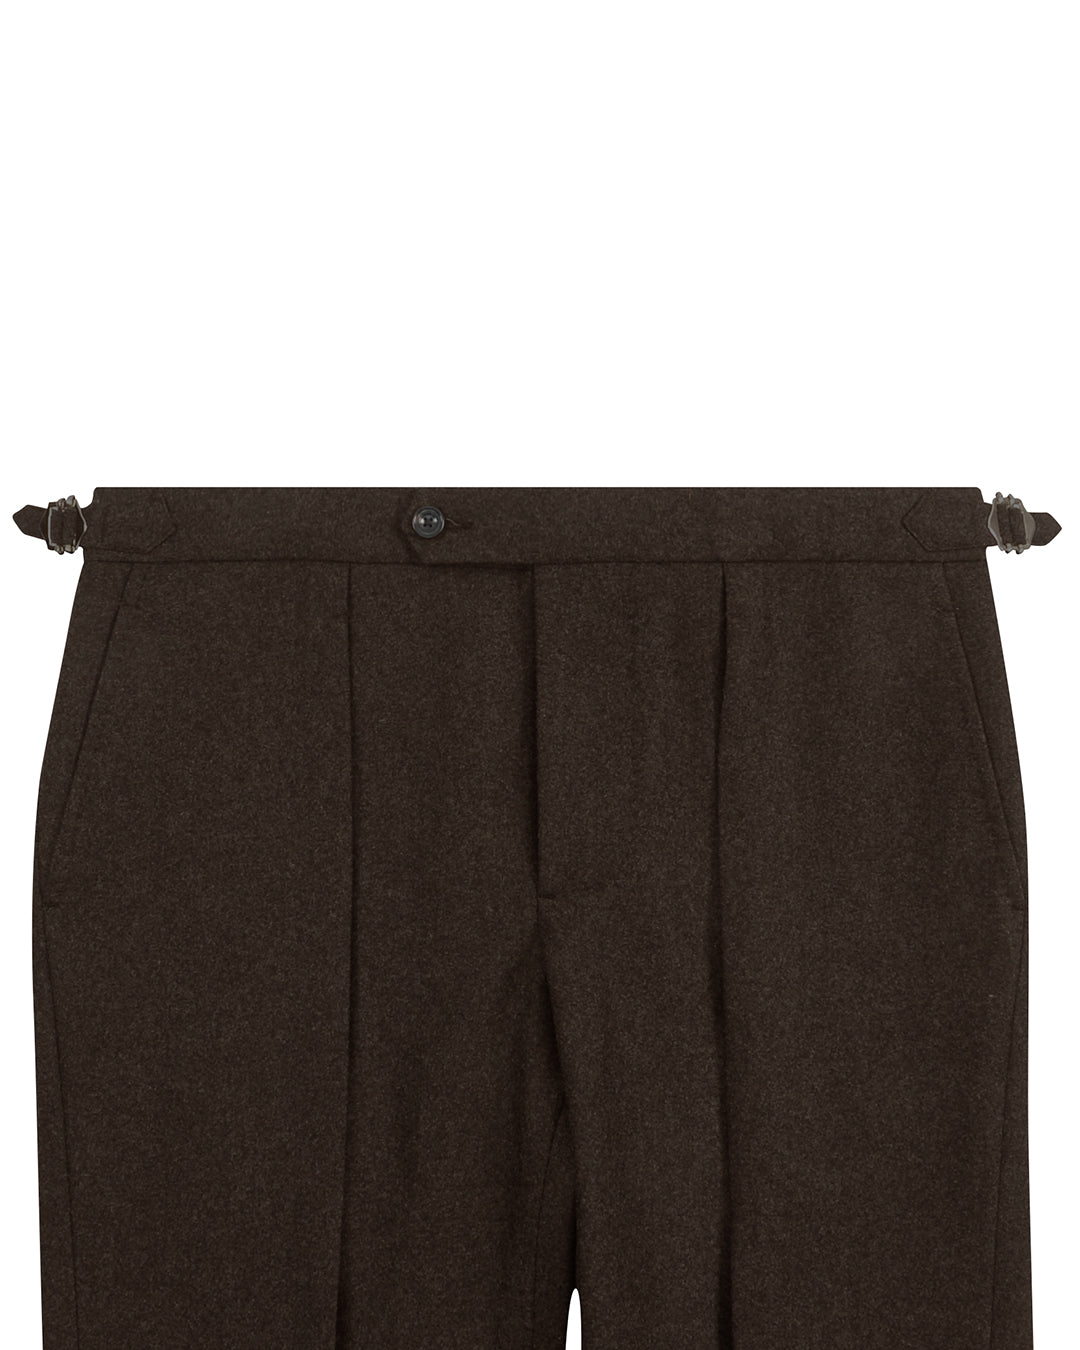 VBC 100% Wool: Dark Brown Flannel